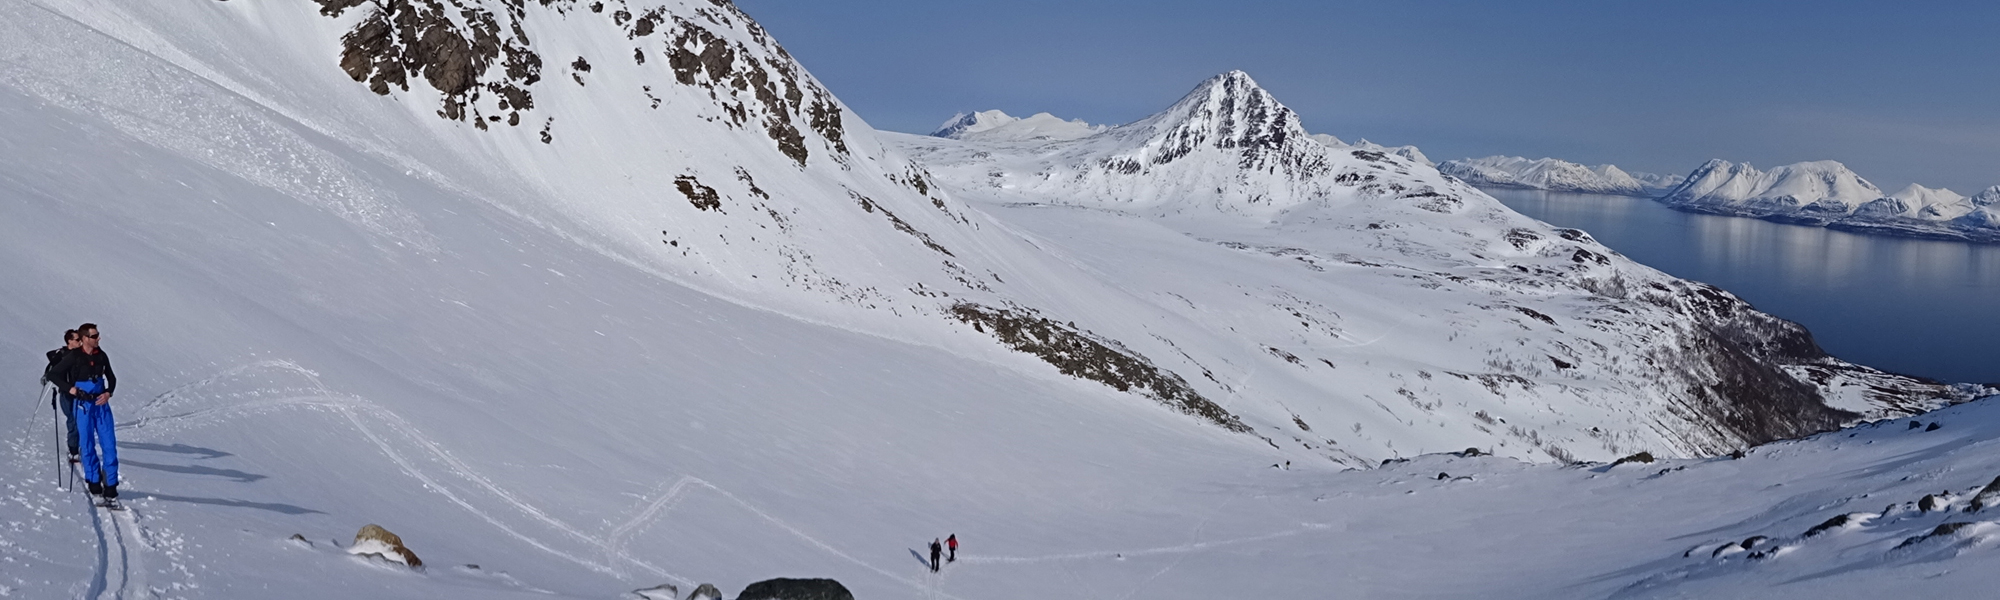 Backcountry Snowboarding Lyngen Alps